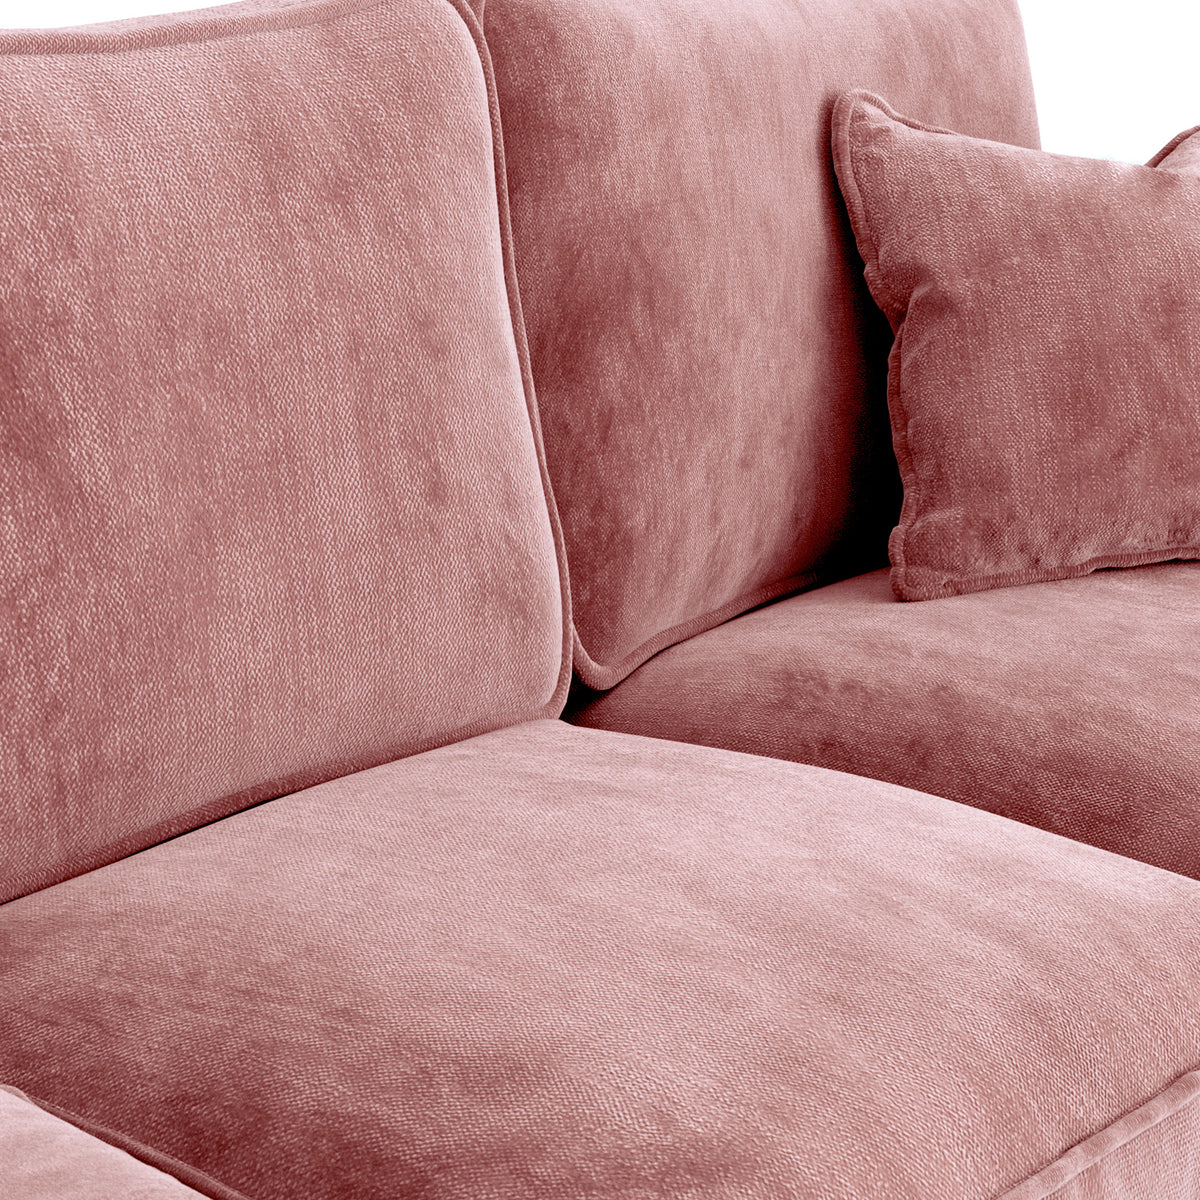 Arthur Blush Pink 2 Seater Sofa from Roseland Furniture